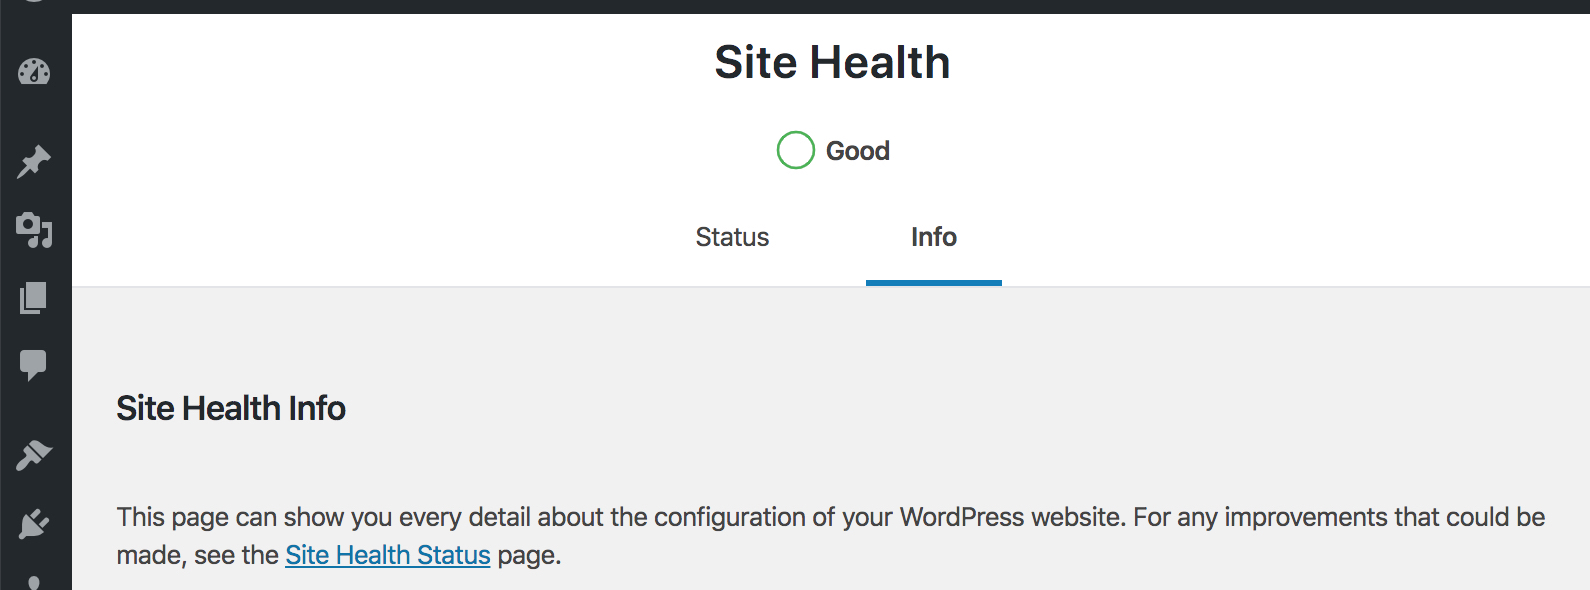 Un WordPress con todos los indicadores de salud en buen estado 